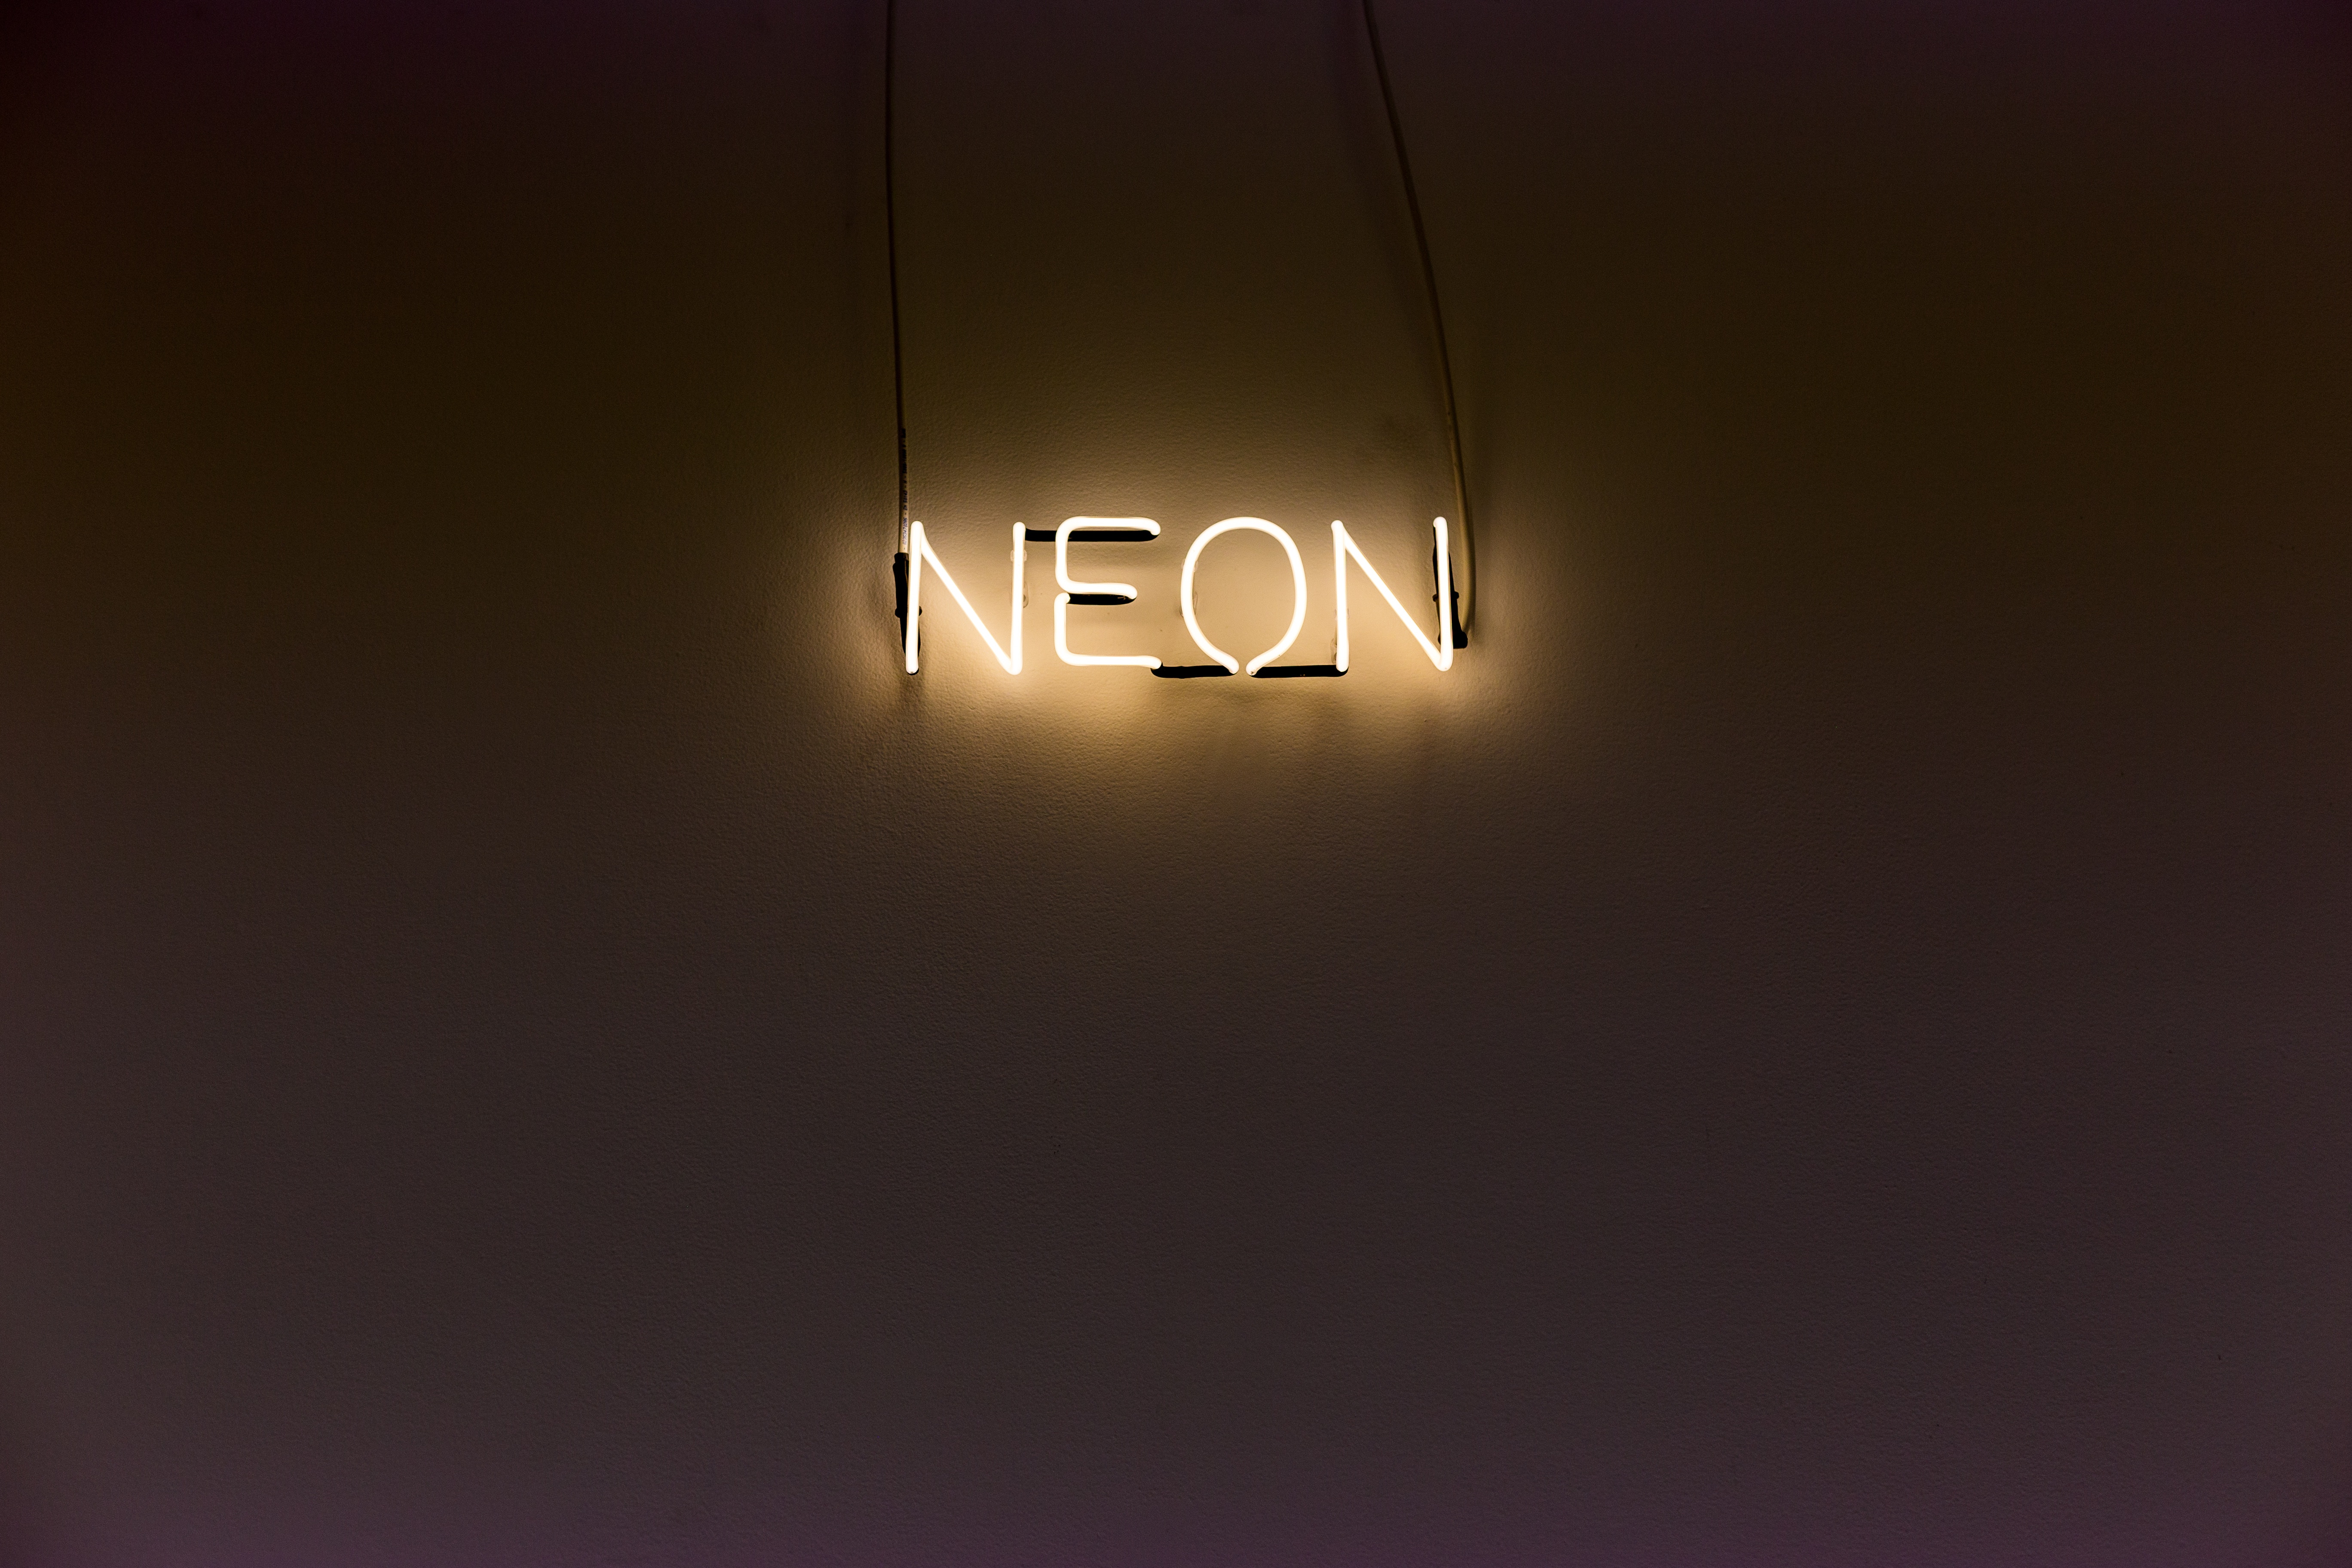 neon, words, wall, backlight, illumination, inscription iphone wallpaper